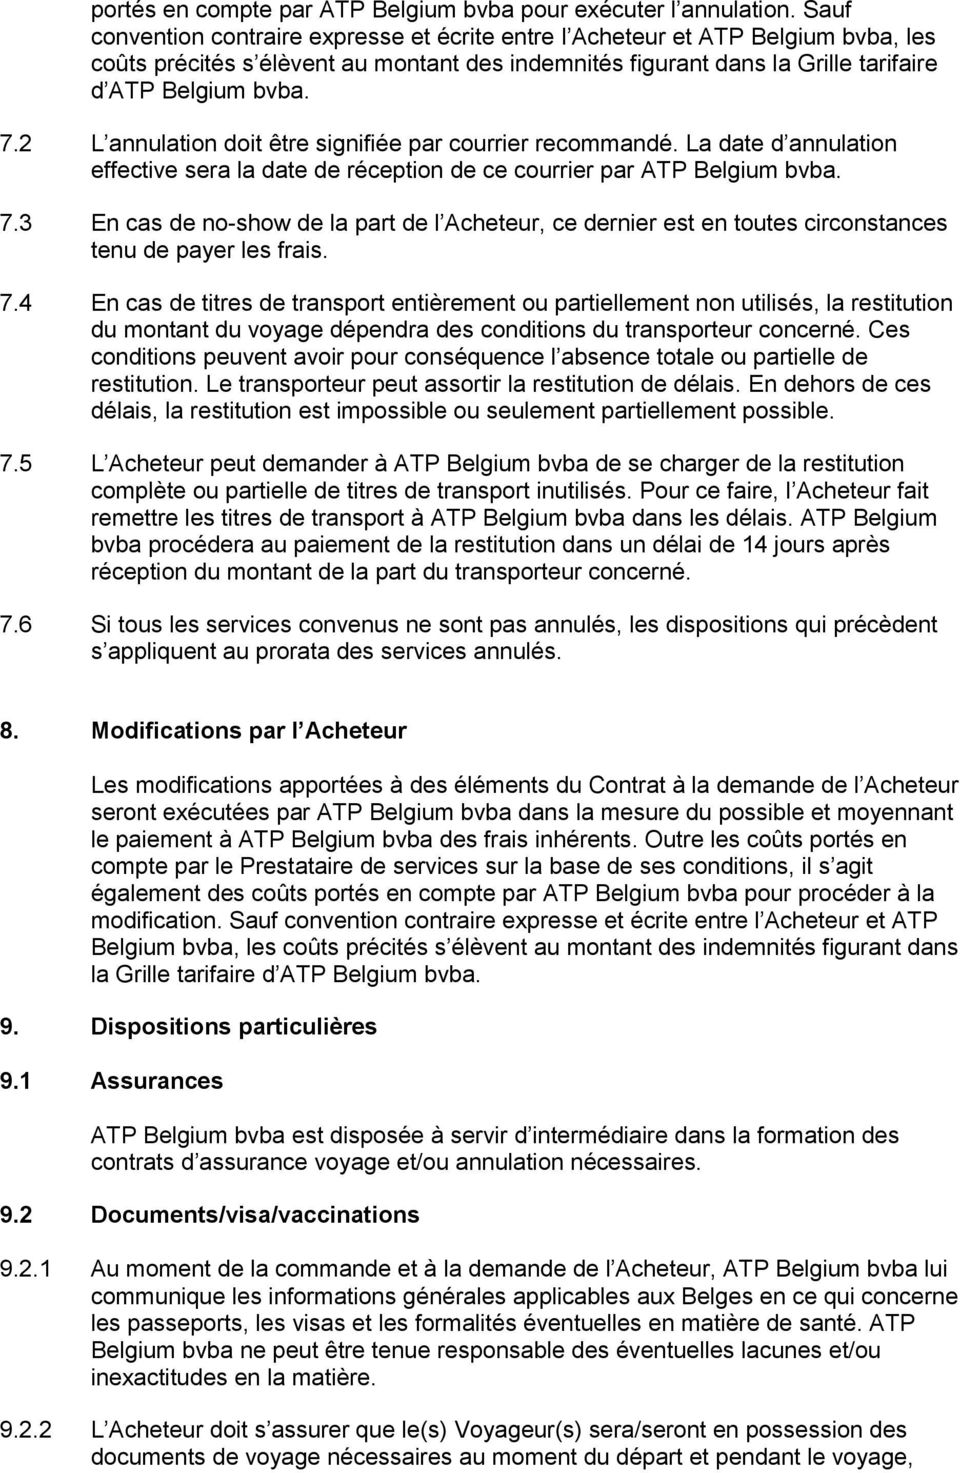 2 L annulation doit être signifiée par courrier recommandé. La date d annulation effective sera la date de réception de ce courrier par ATP Belgium bvba. 7.